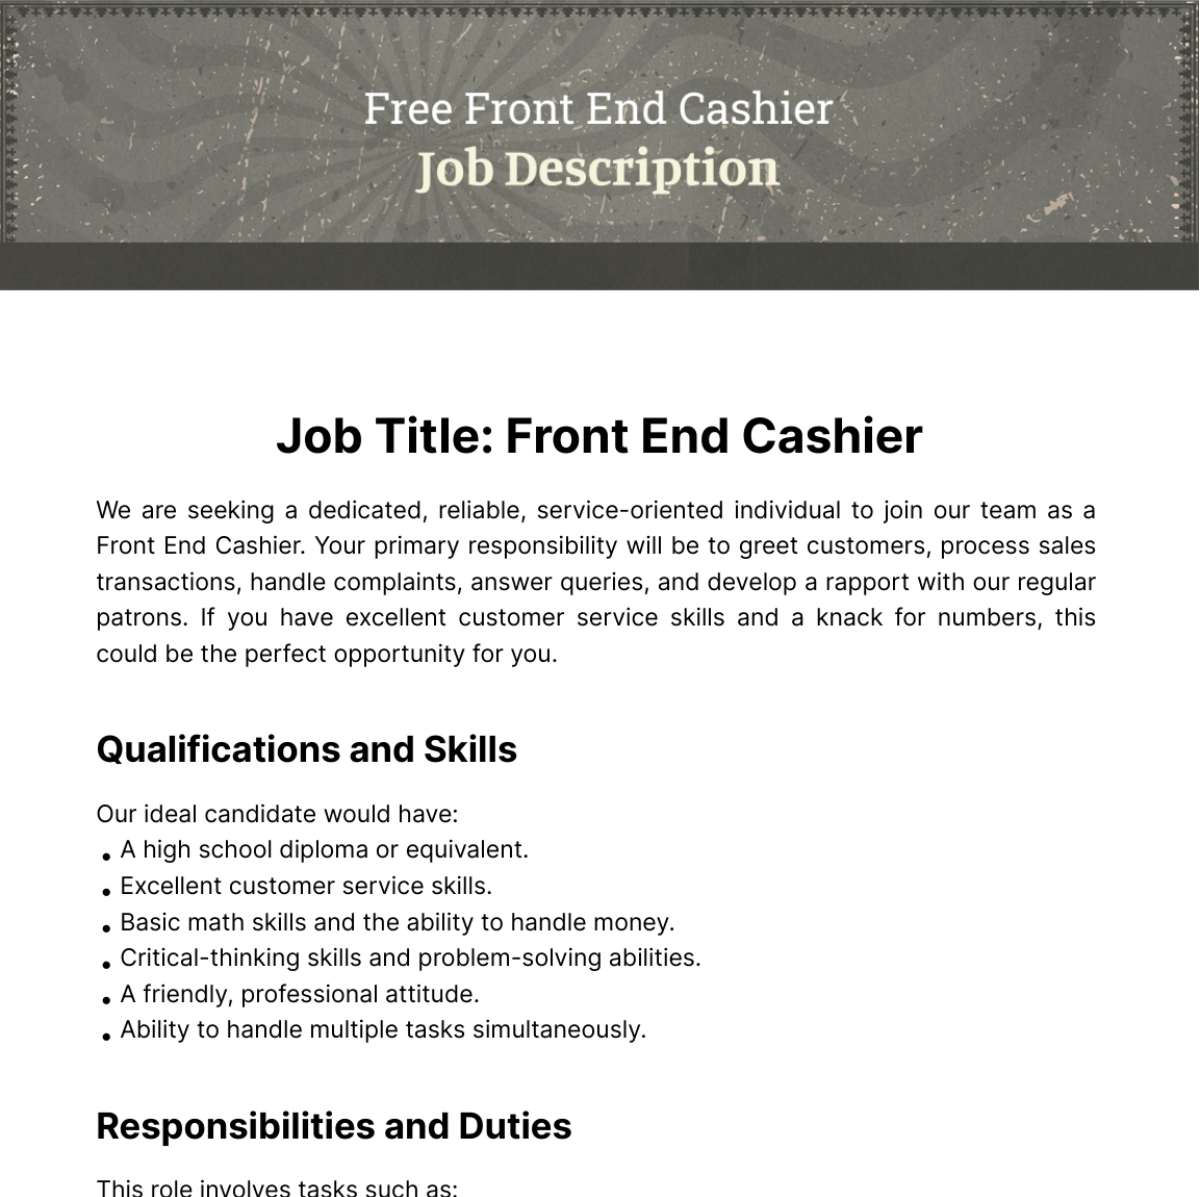 Free Front End Cashier Job Description Template